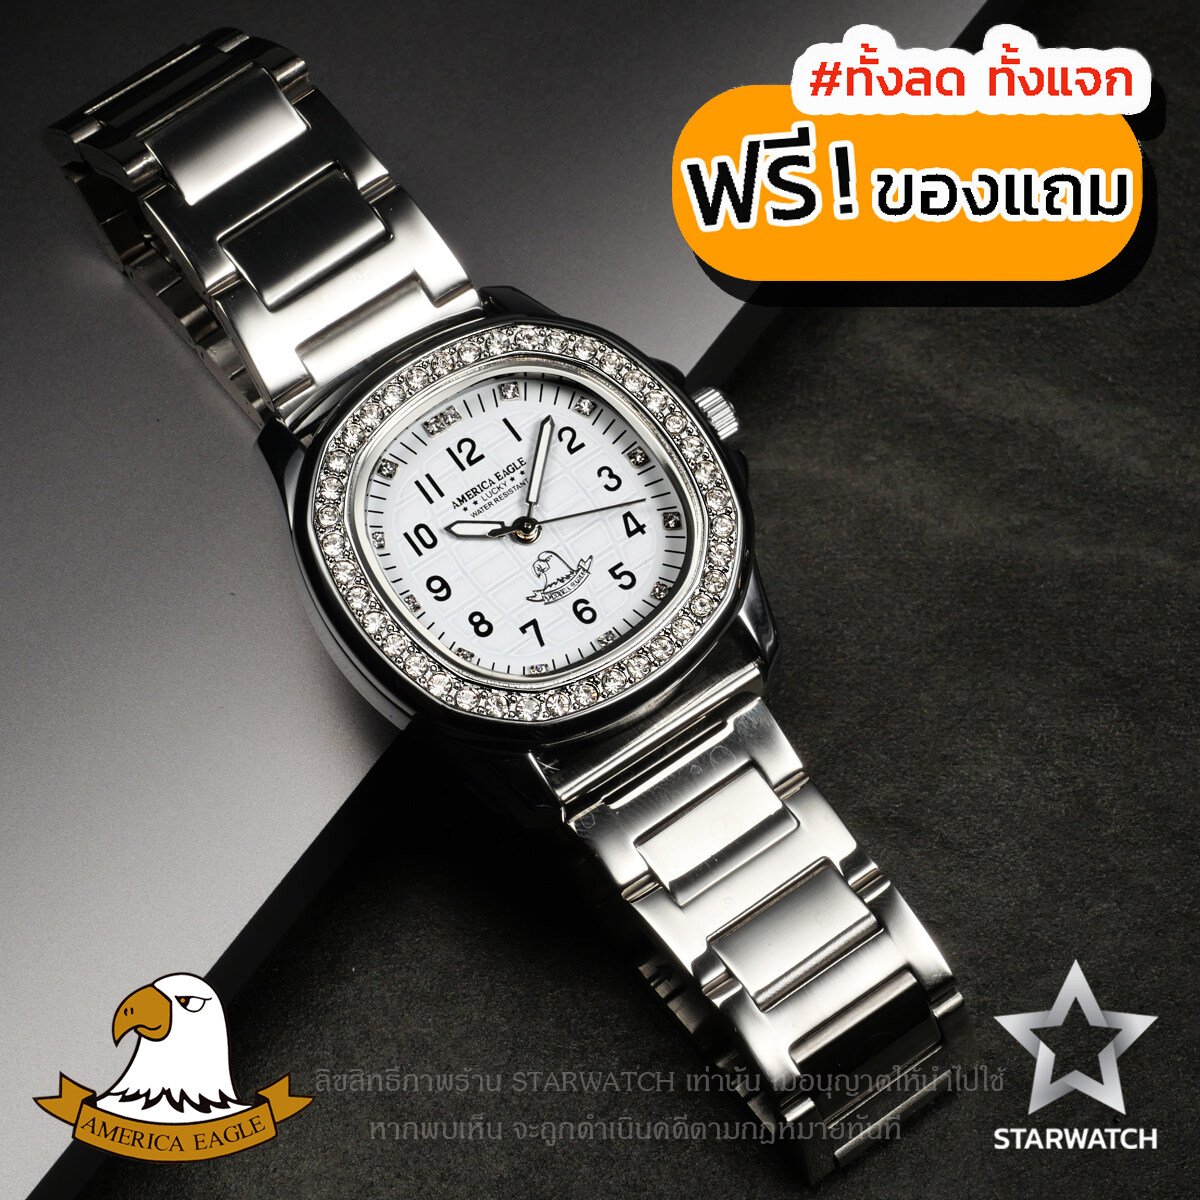 โปรโมชั่น Flash Sale : GRAND EAGLE นาฬิกาข้อมือผู้หญิง สายสแตนเลส รุ่น AE8036L – SILVER/WHITE